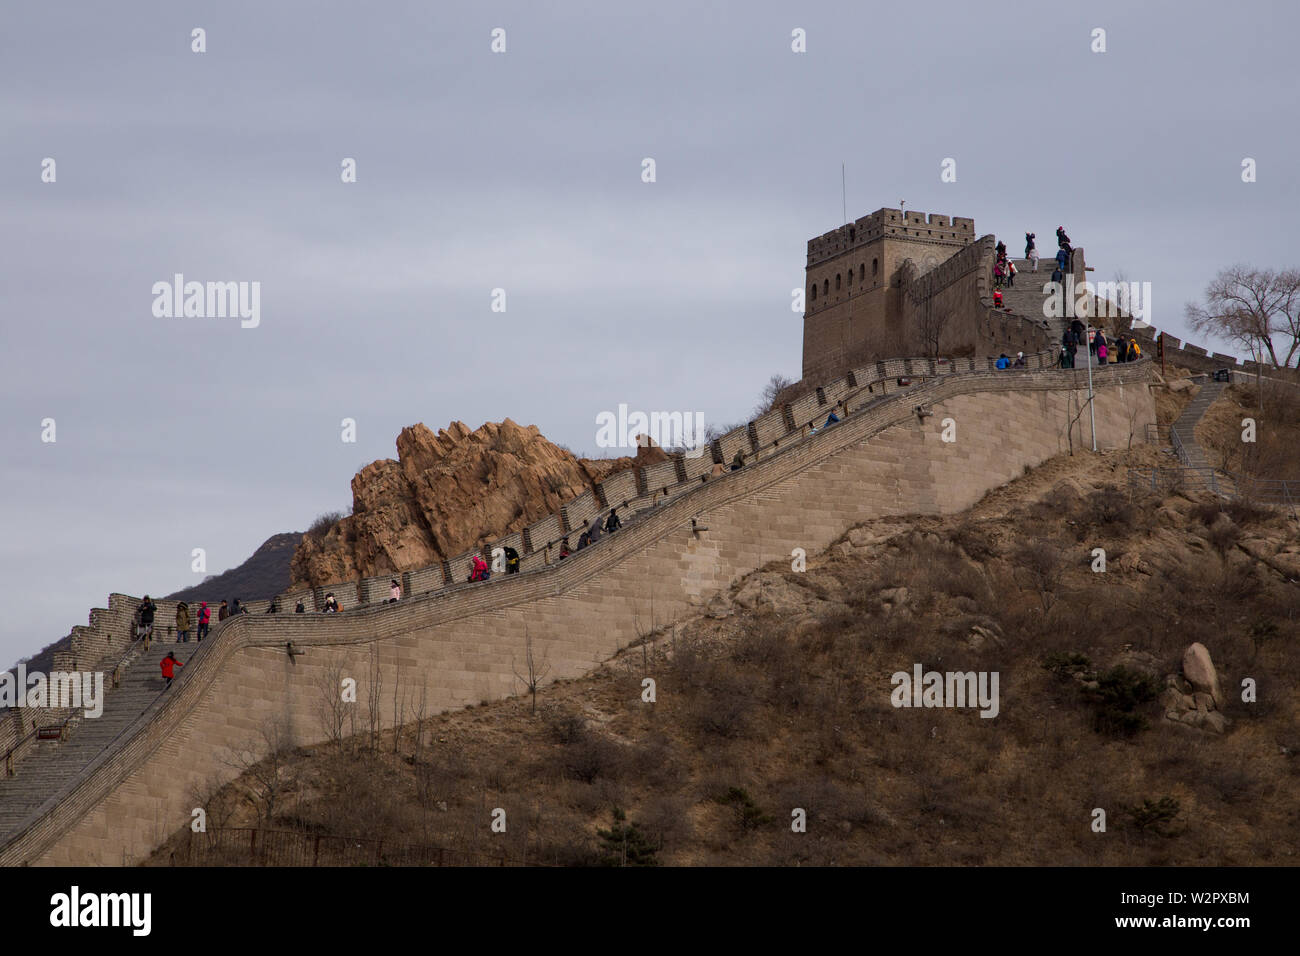 Badaling, Cina - 27 dicembre 2013: Il grande muro con pochi turisti irriconoscibile camminando su una giornata invernale presso Badaling, nei pressi di Pechino Foto Stock